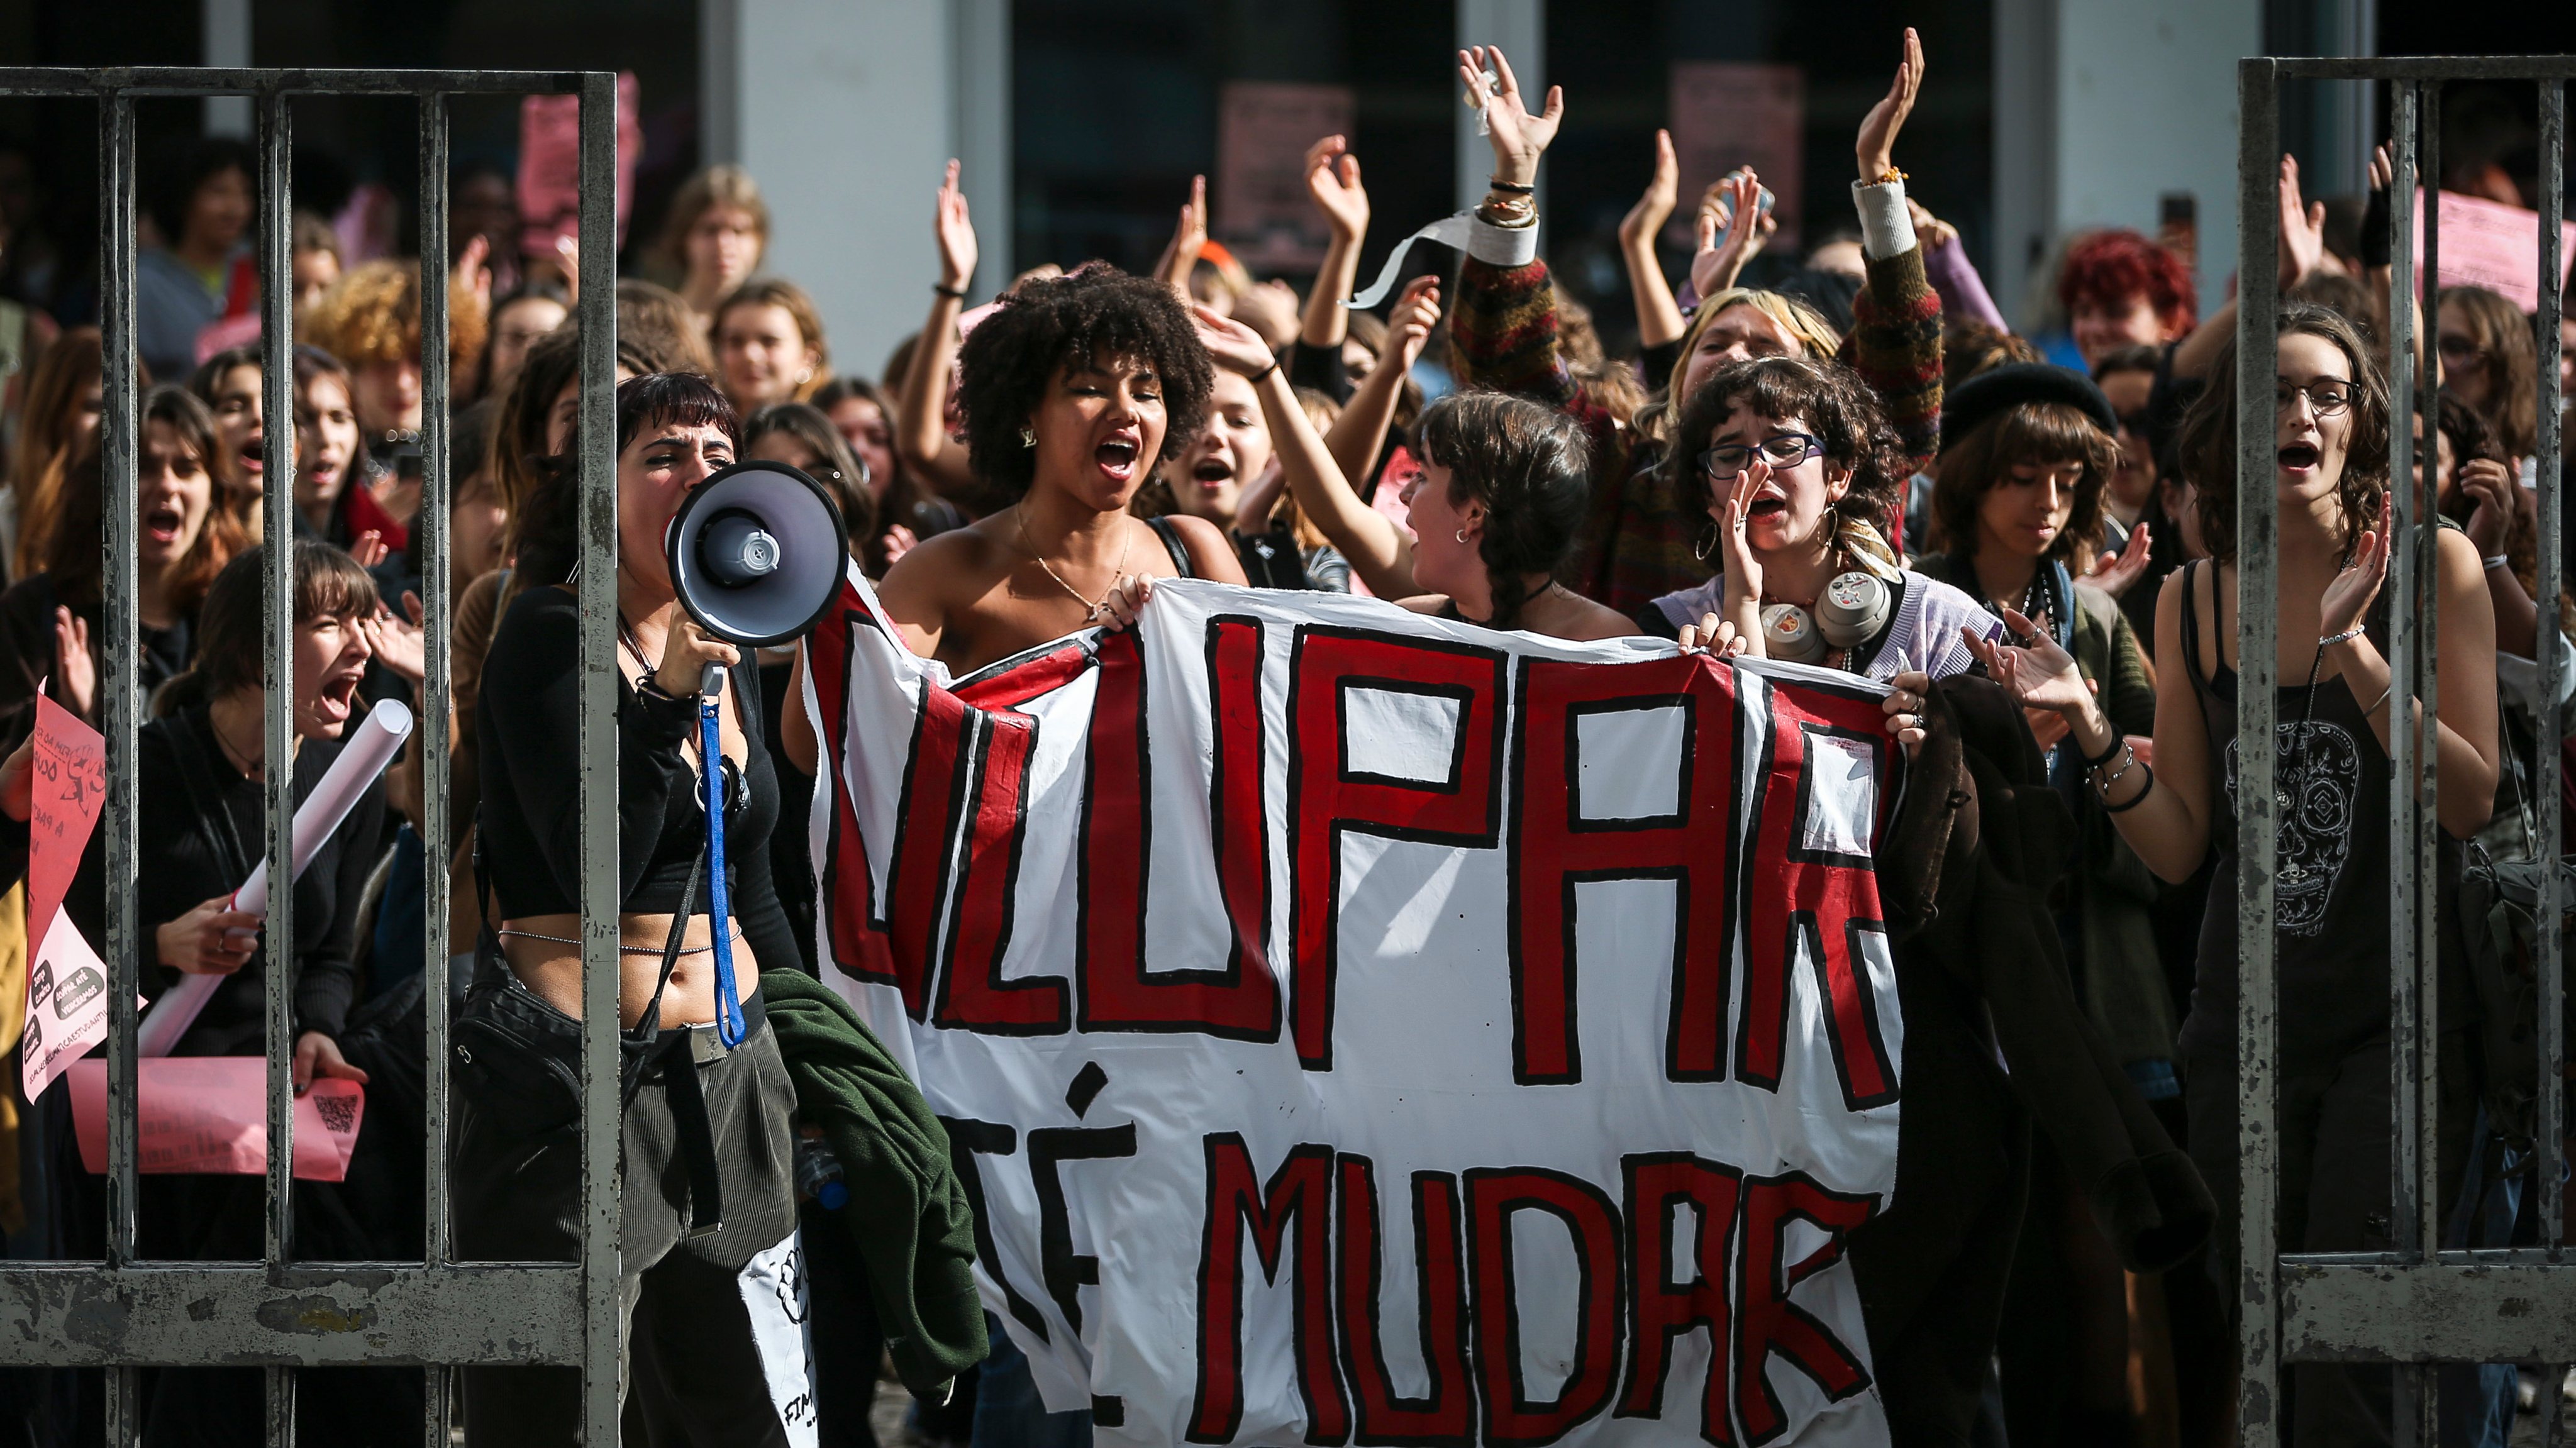 Na segunda semana de novembro, seis escolas secundárias e faculdades em Lisboa foram ocupadas por grupos de estudantes que protestavam pelo fim da exploração dos combustíveis fósseis